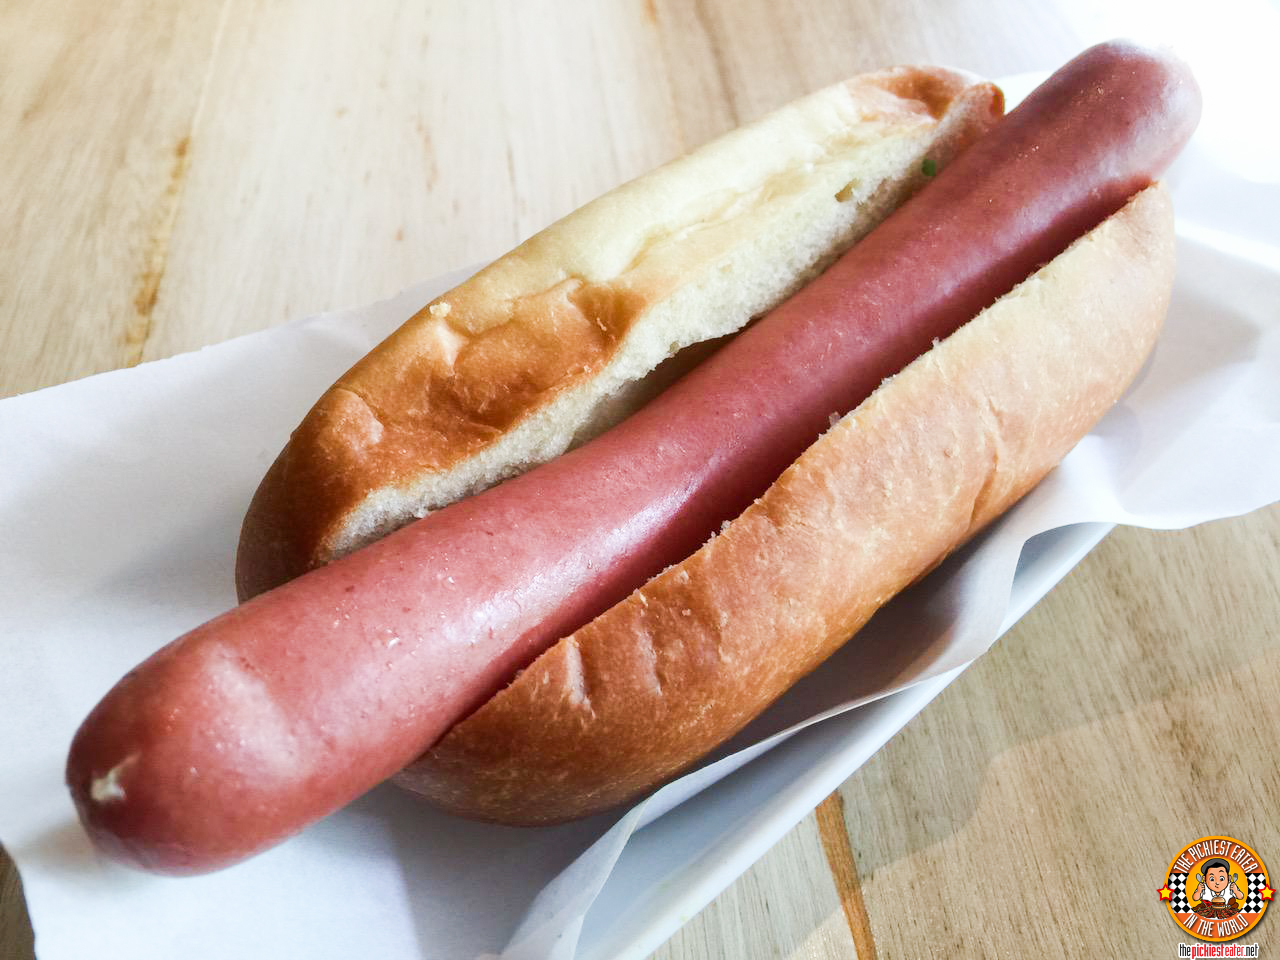 Hotdogueria pink dog - Hotdogueria com sabores únicos